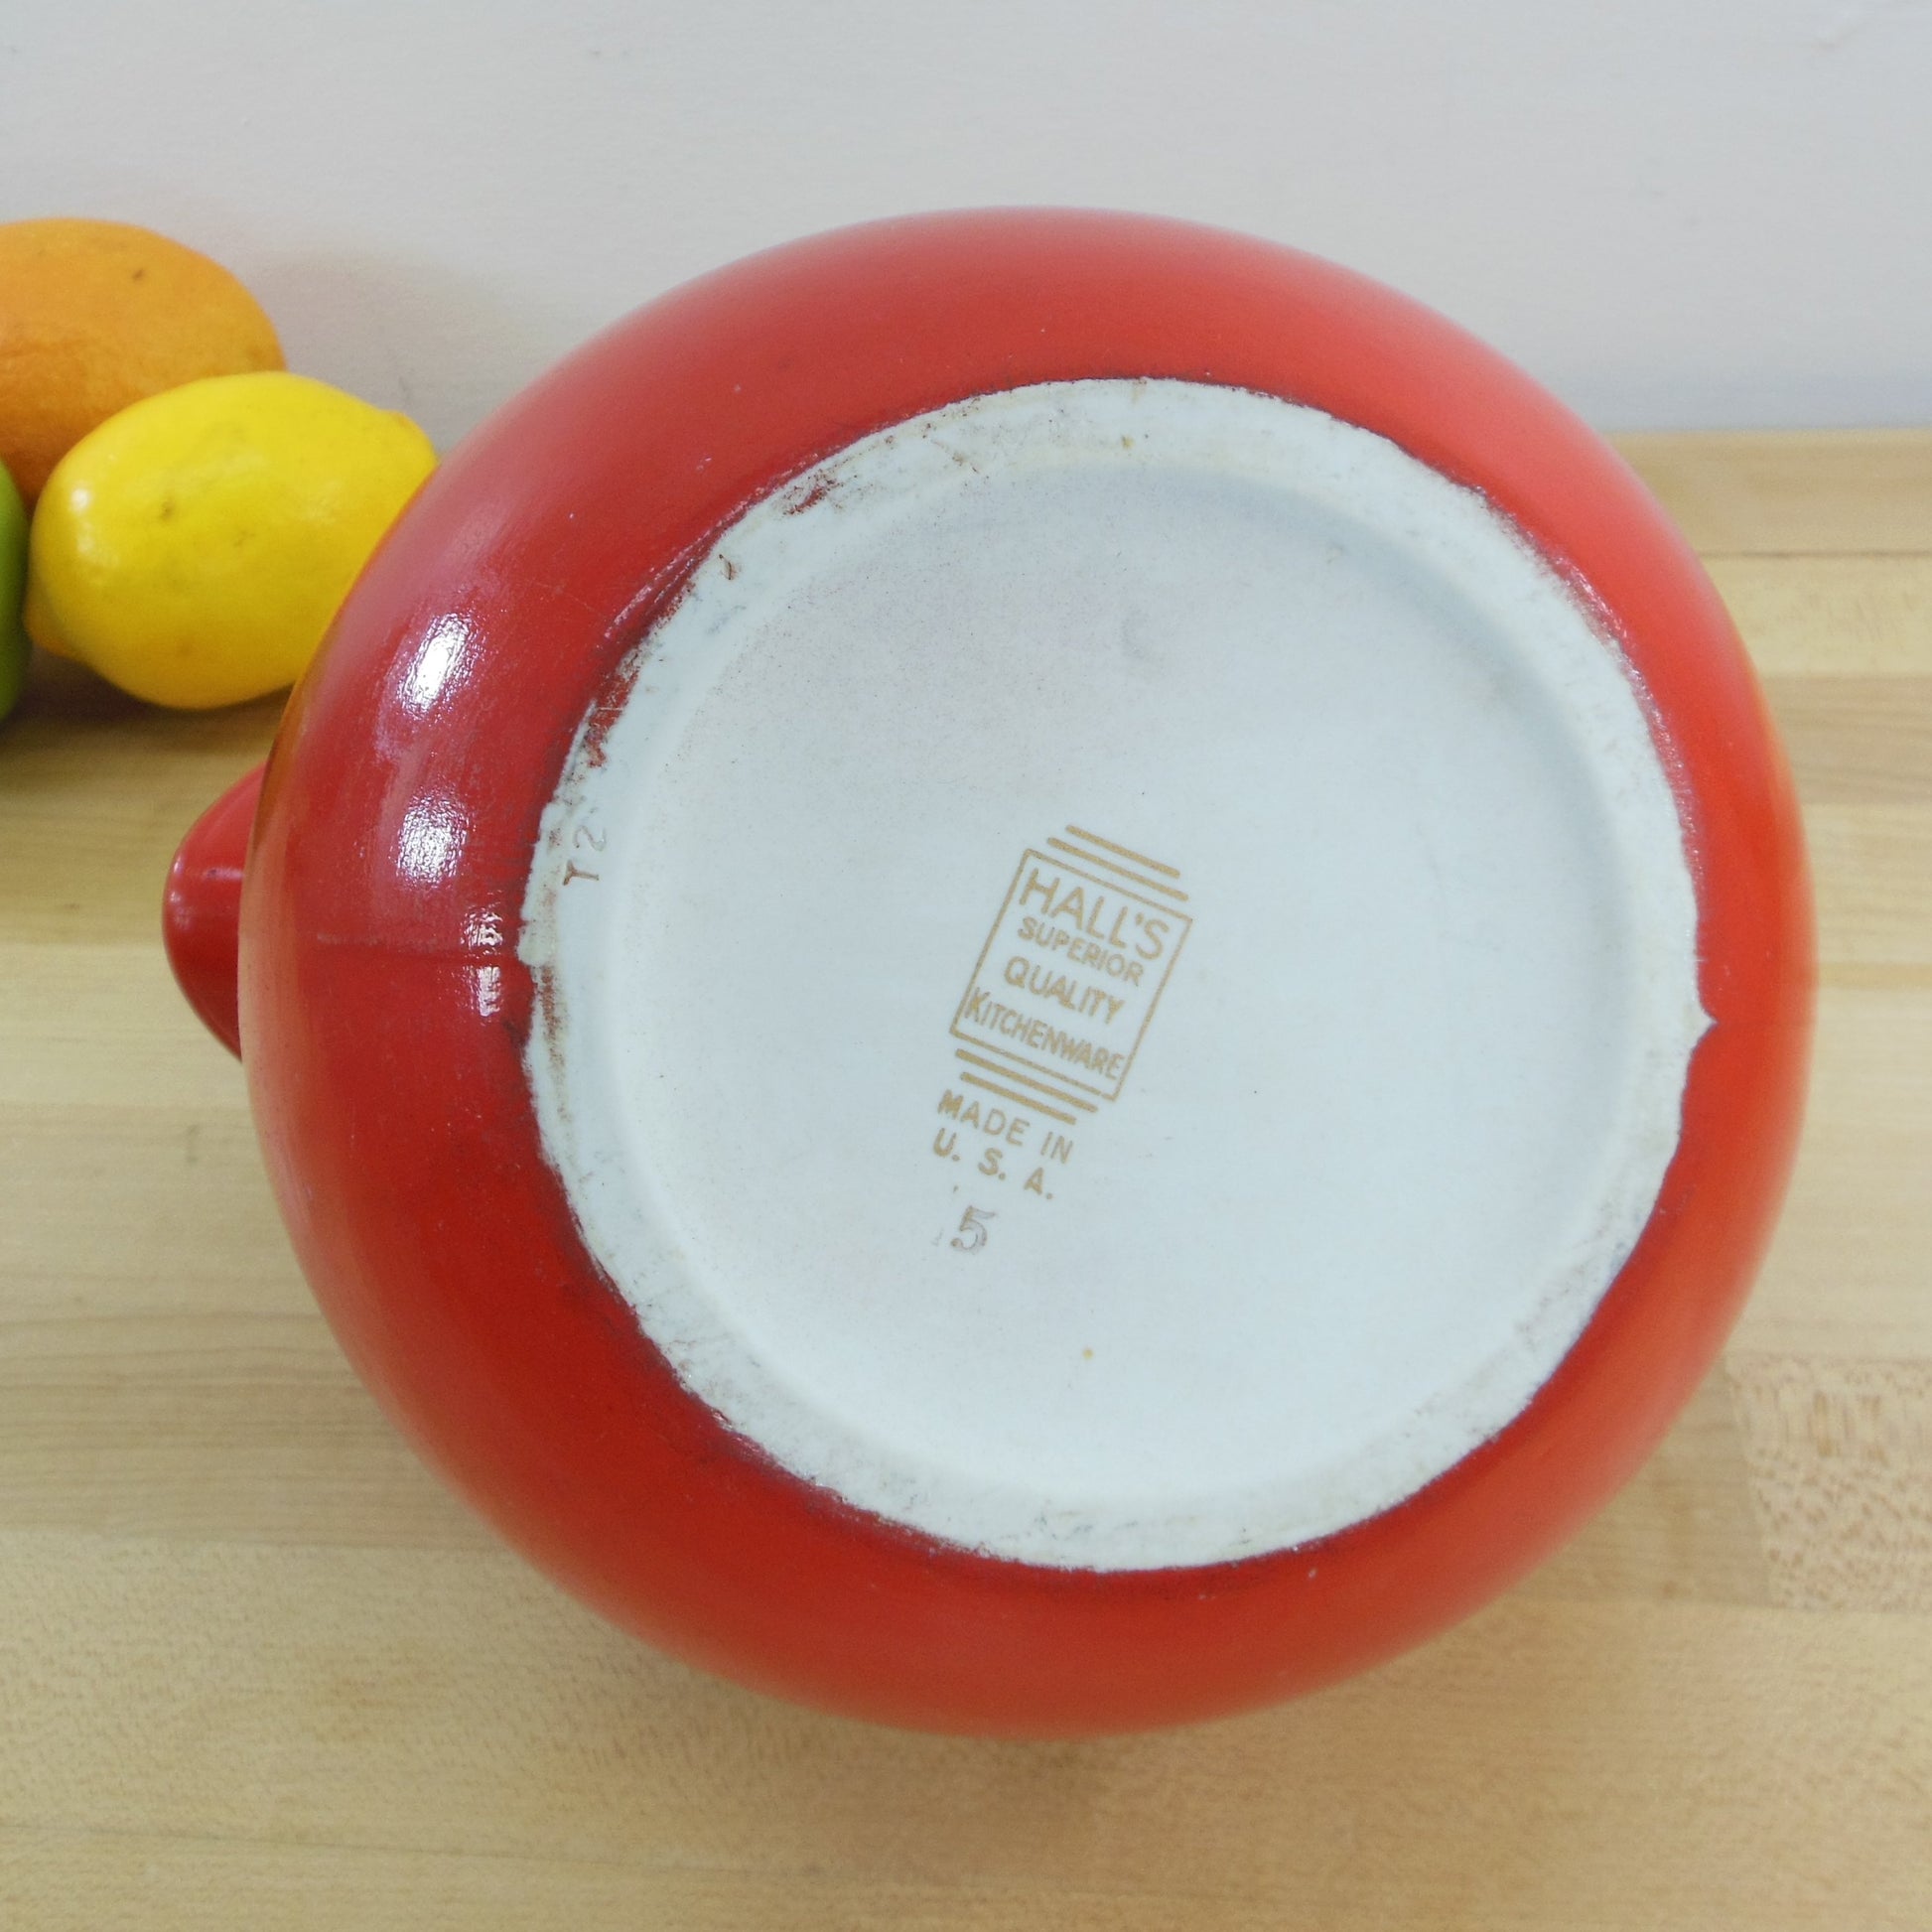 Hall's USA Superior Quality Kitchenware Red Ball 2 Quart Pitcher Maker Mark